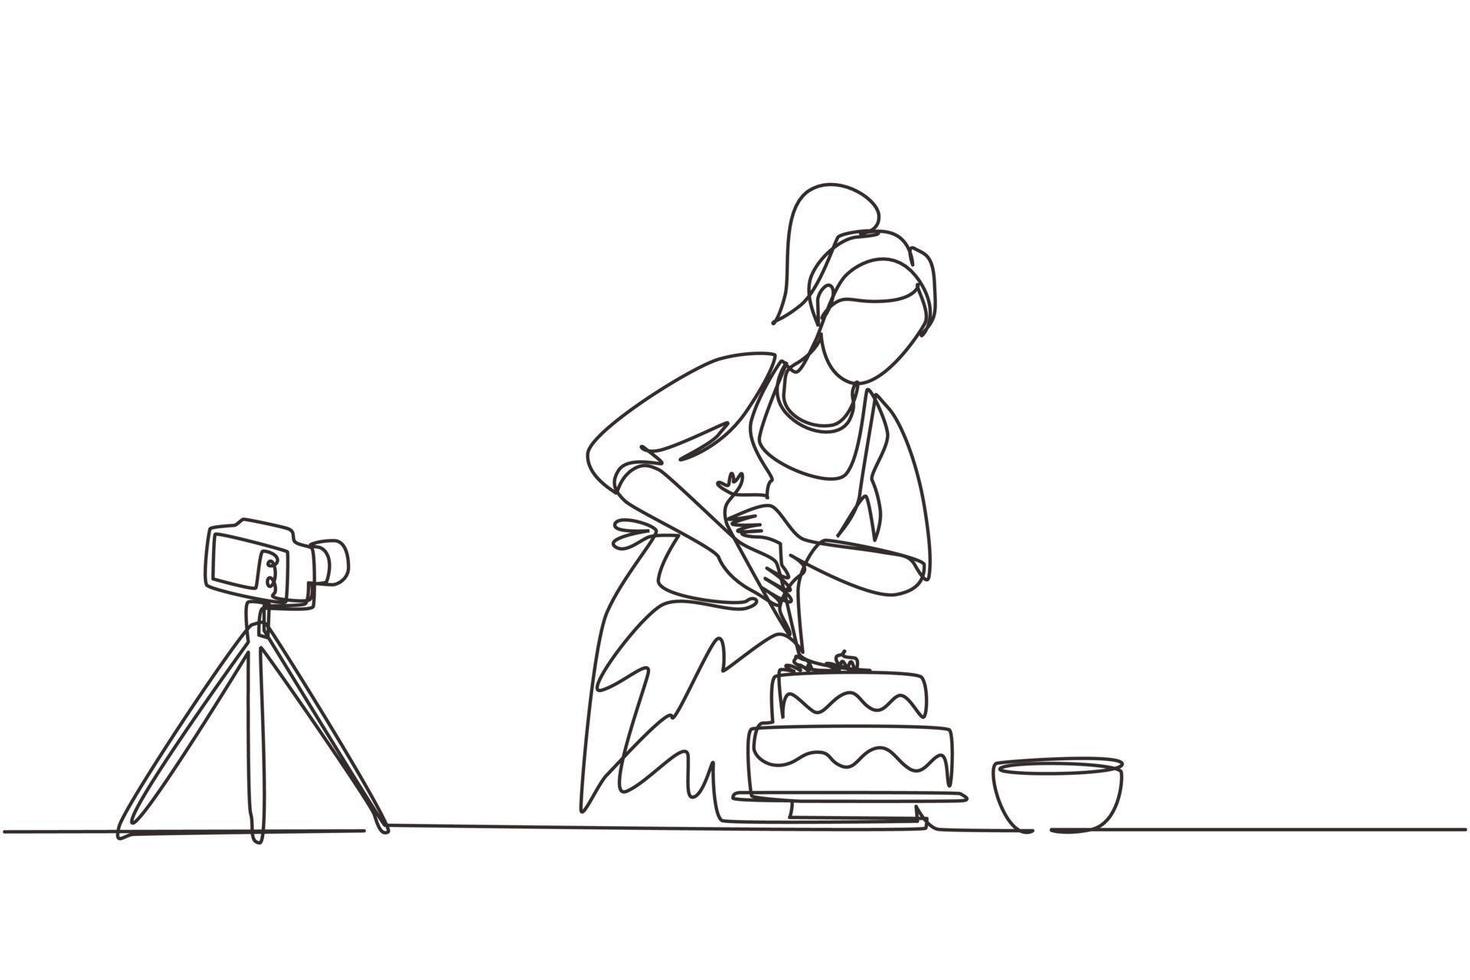 enkele doorlopende lijntekening meisje bakken en decoreren taart in de keuken. vrouw blogger video opnemen op camera, statief gebruiken, plaatsen op sociale media. één lijn tekenen ontwerp vectorillustratie vector